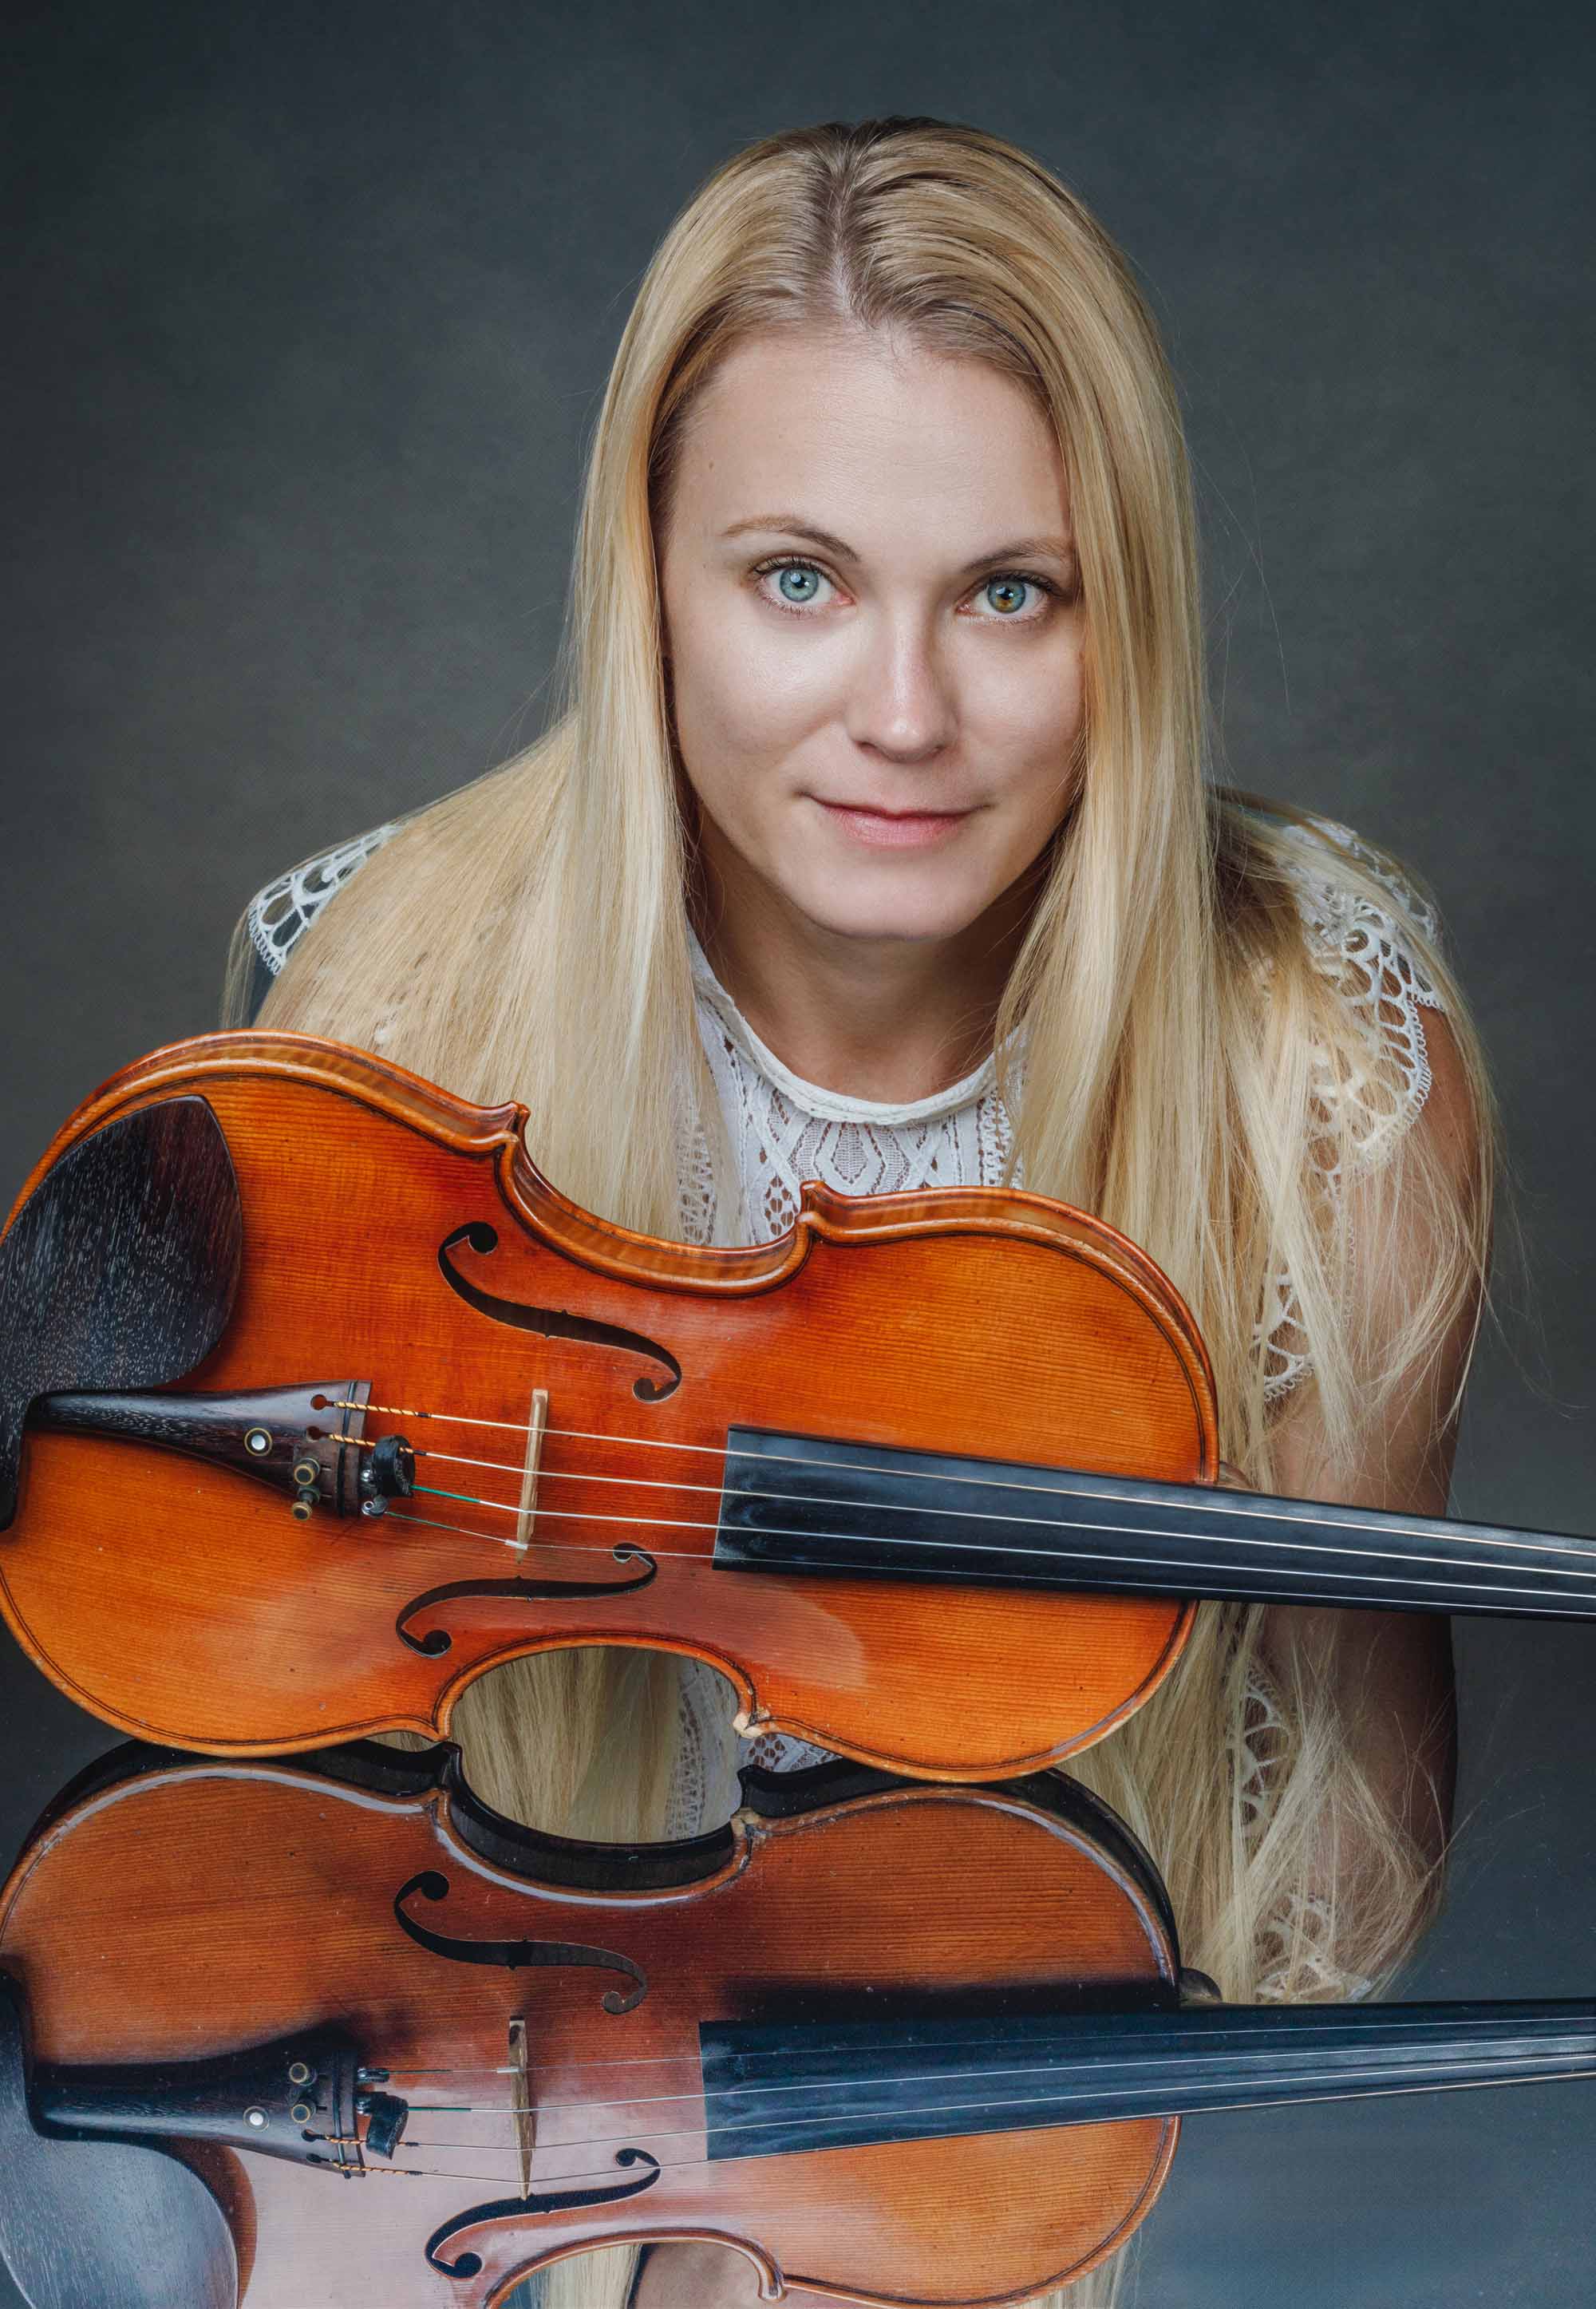 blonde Geigerin und ihre Geige spiegeln sich auf einer schwarzen Fläche